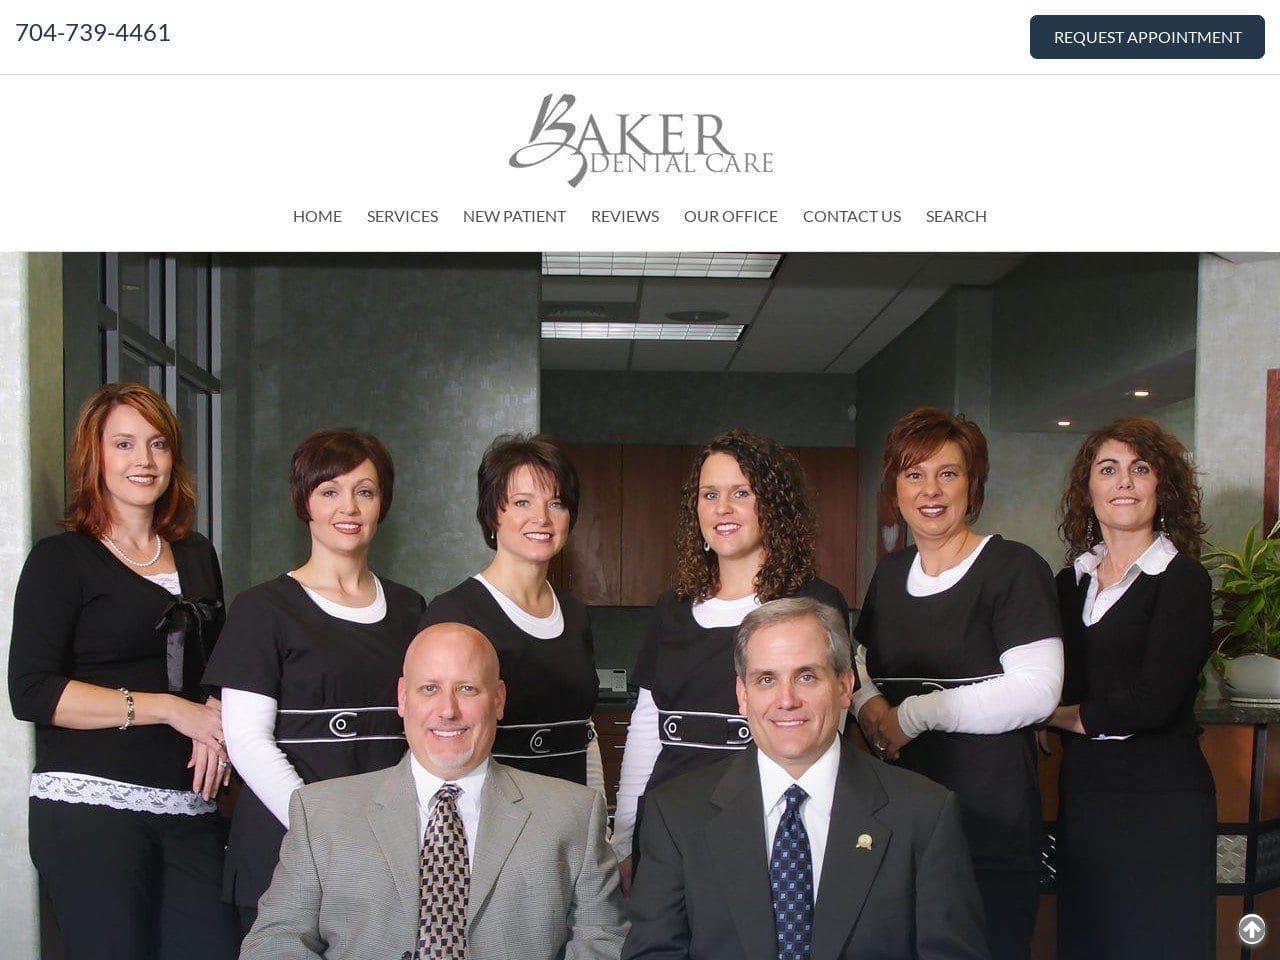 Baker Dental Care Website Screenshot from bakerdentalcare.com